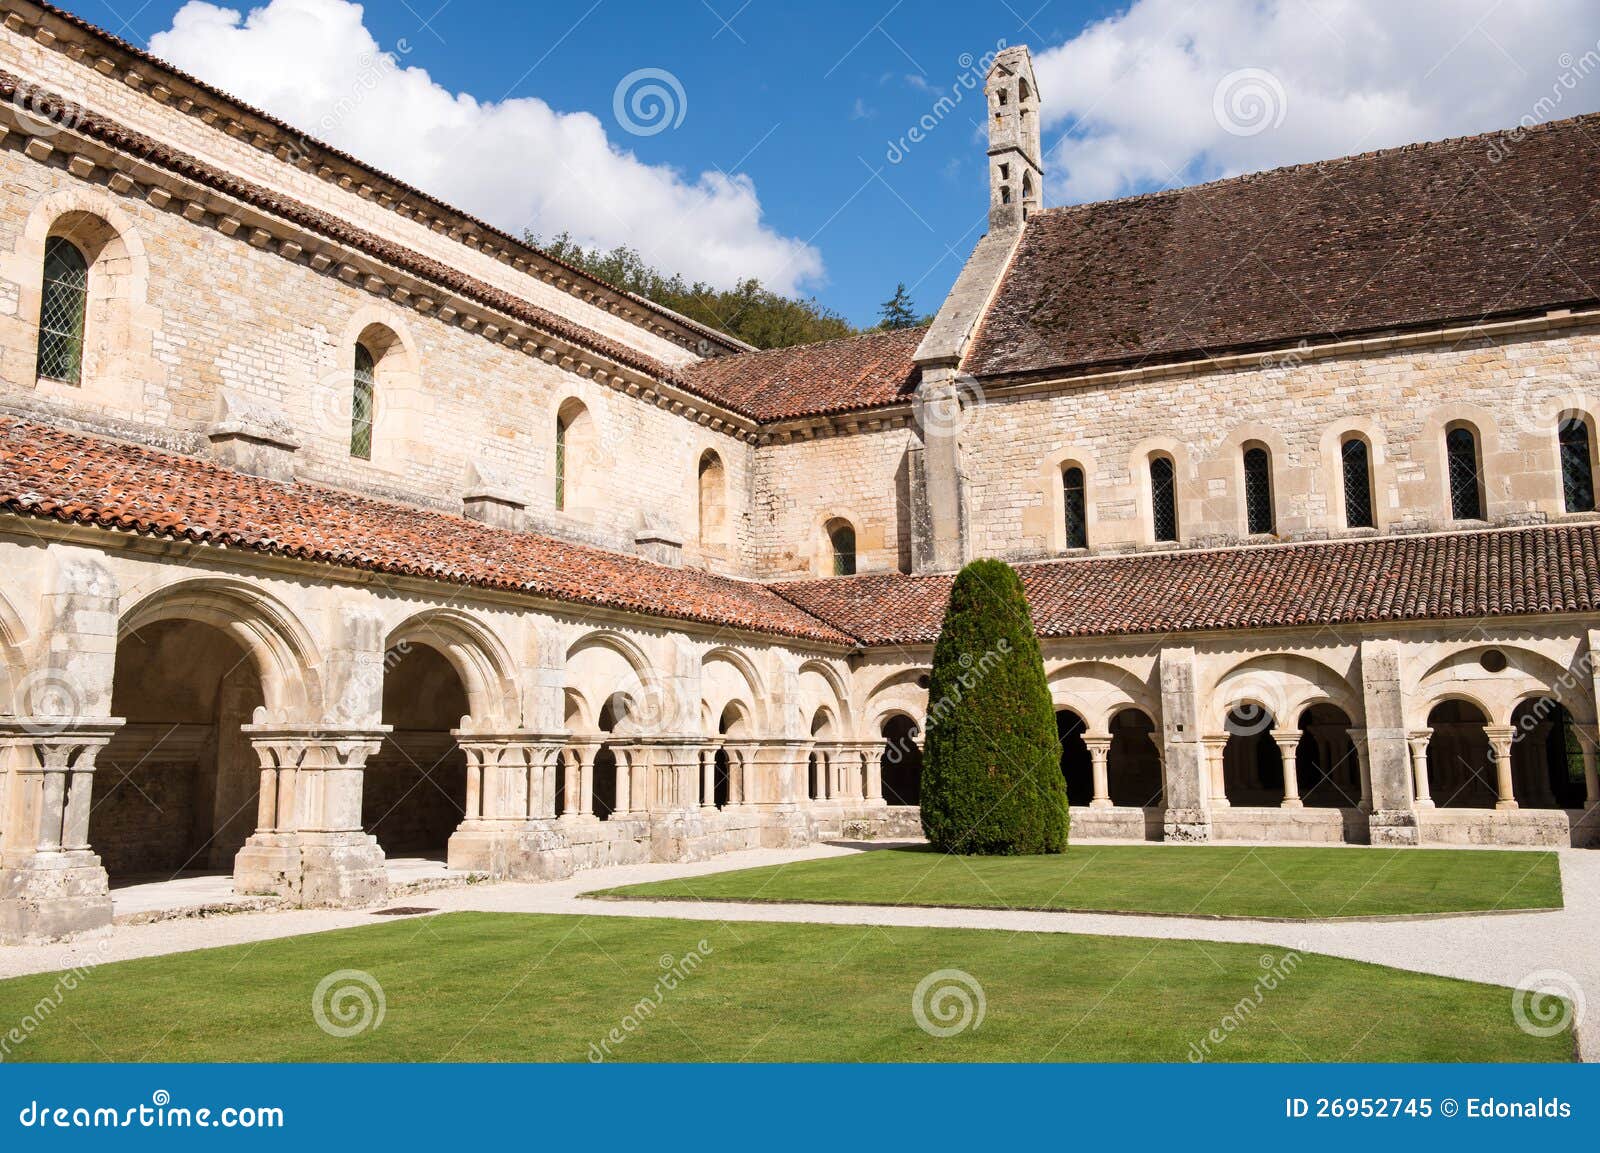 fontenay abbey cloister